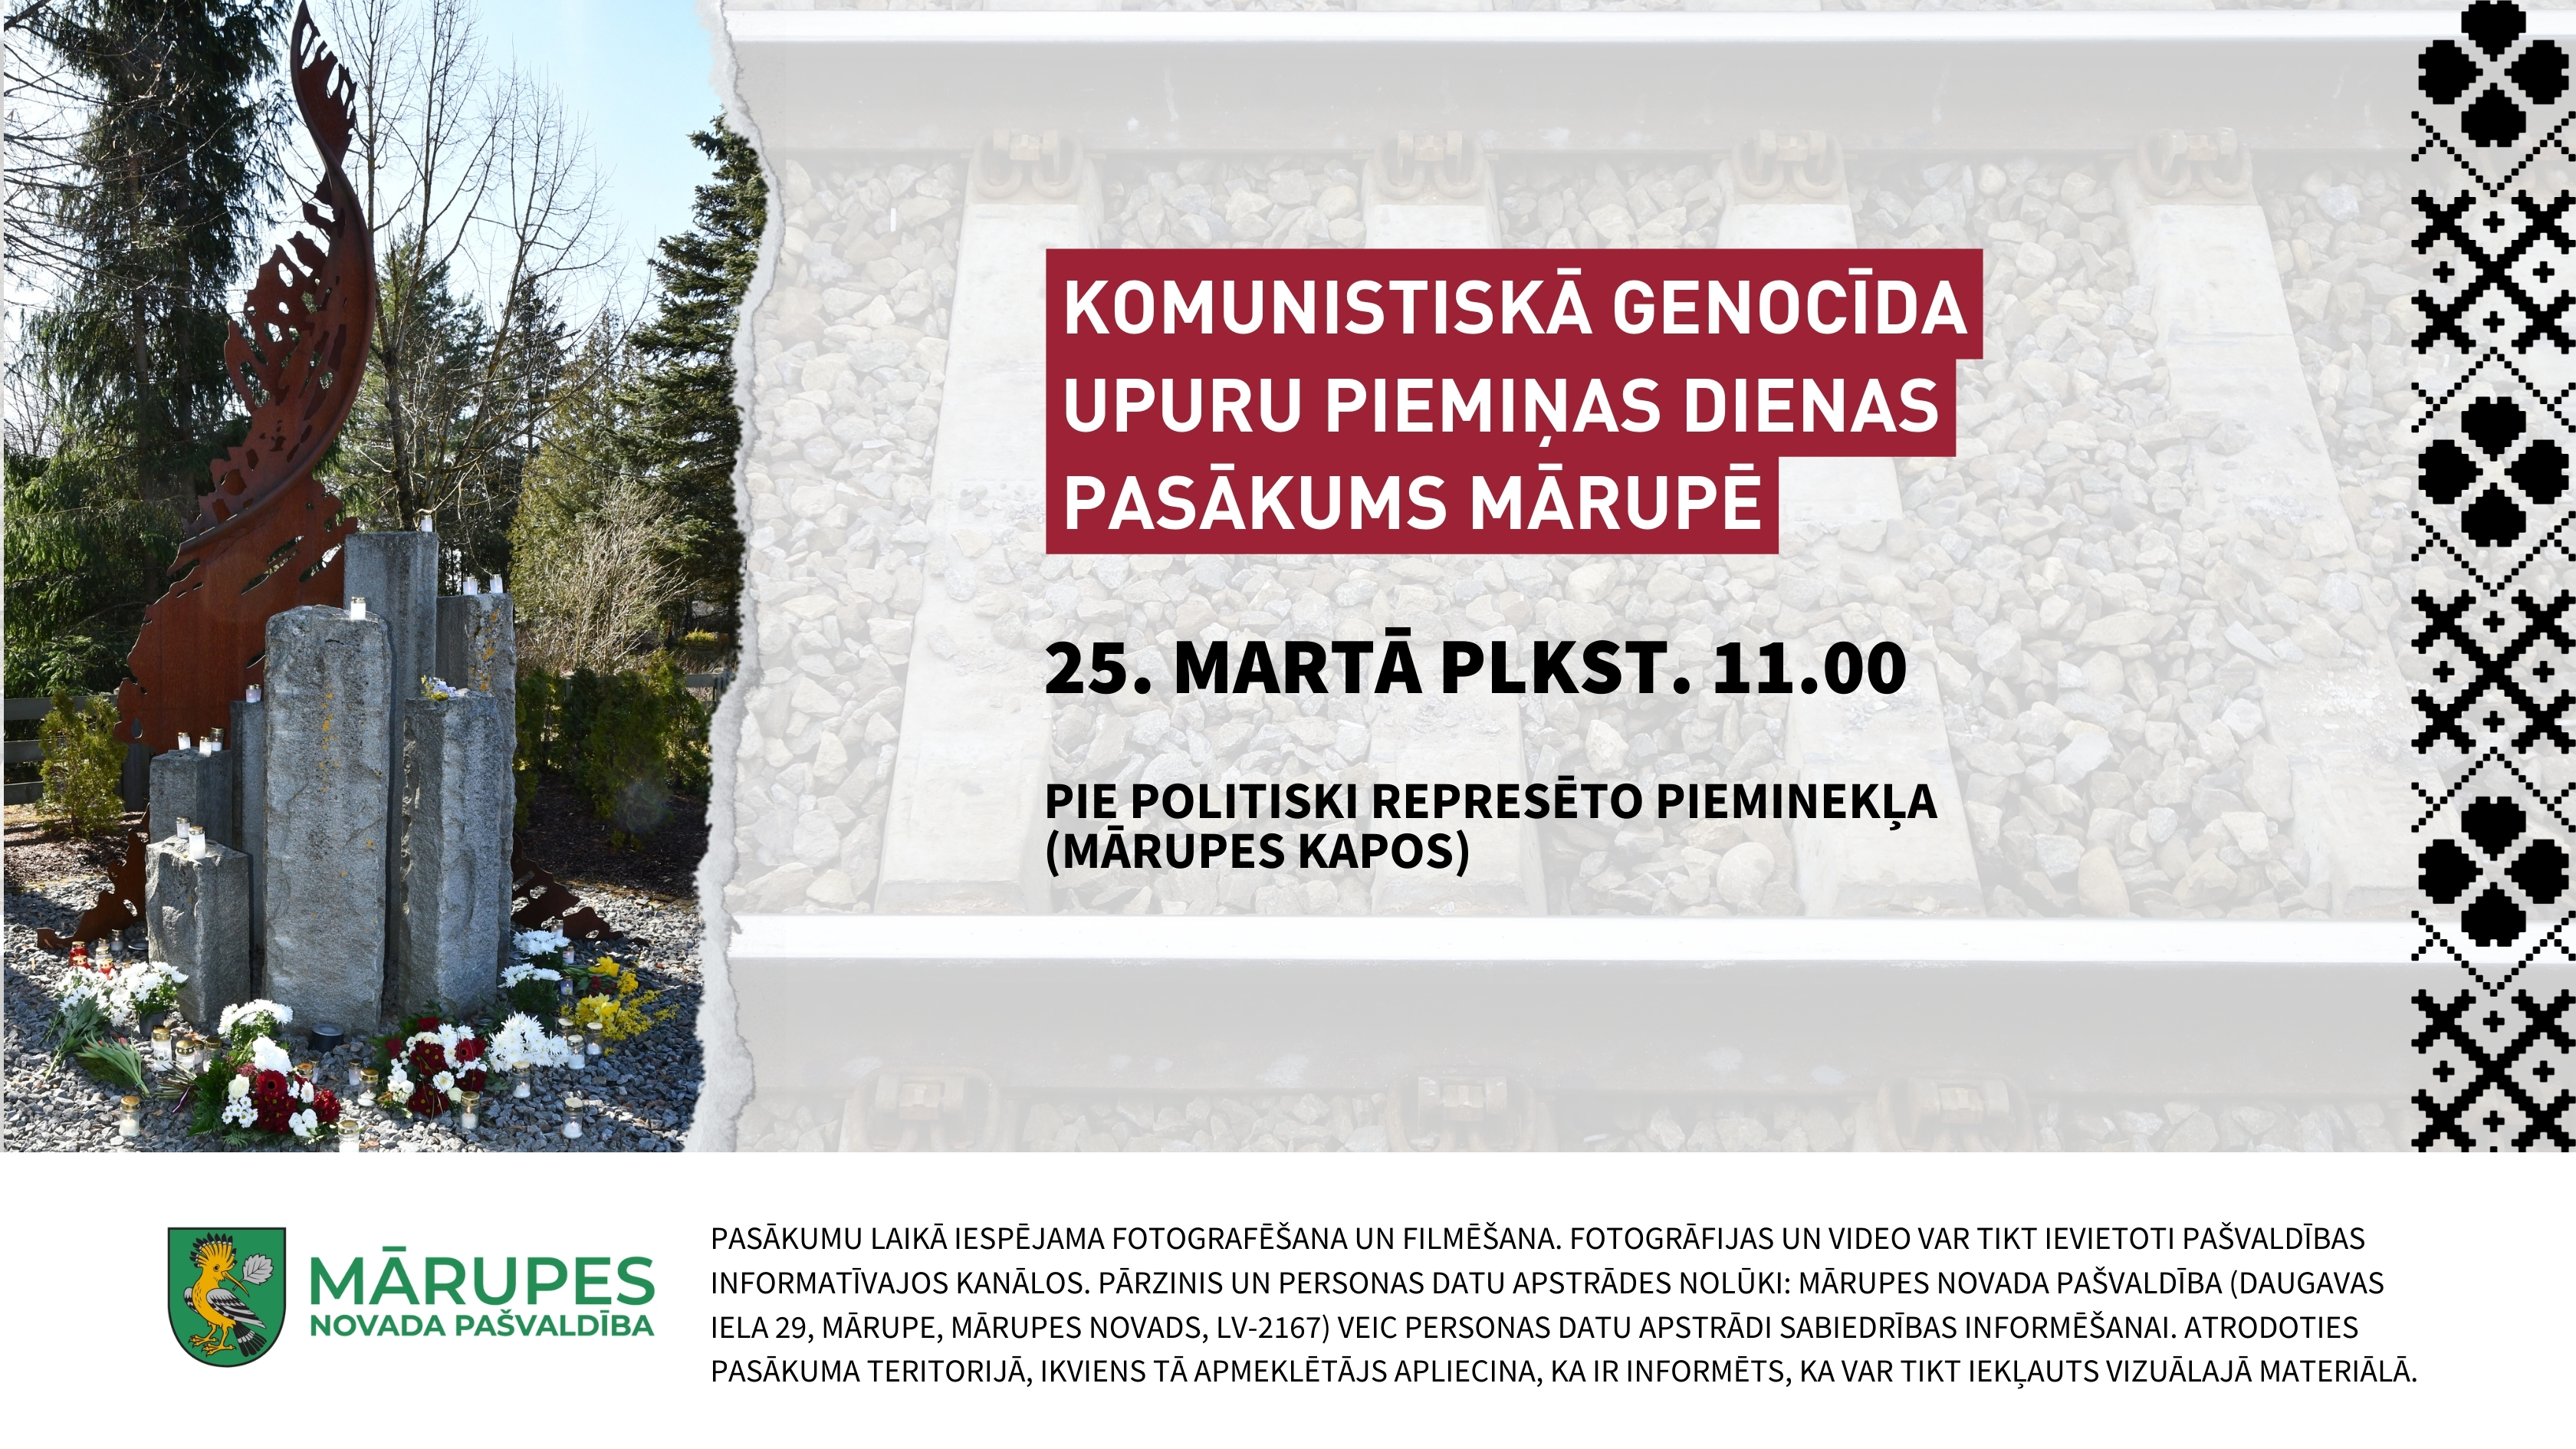 Politiski represēto piemineklis Mārupē un informatīvs plakāts par genocīda upuru piemiņas dienas atceres pasākumu